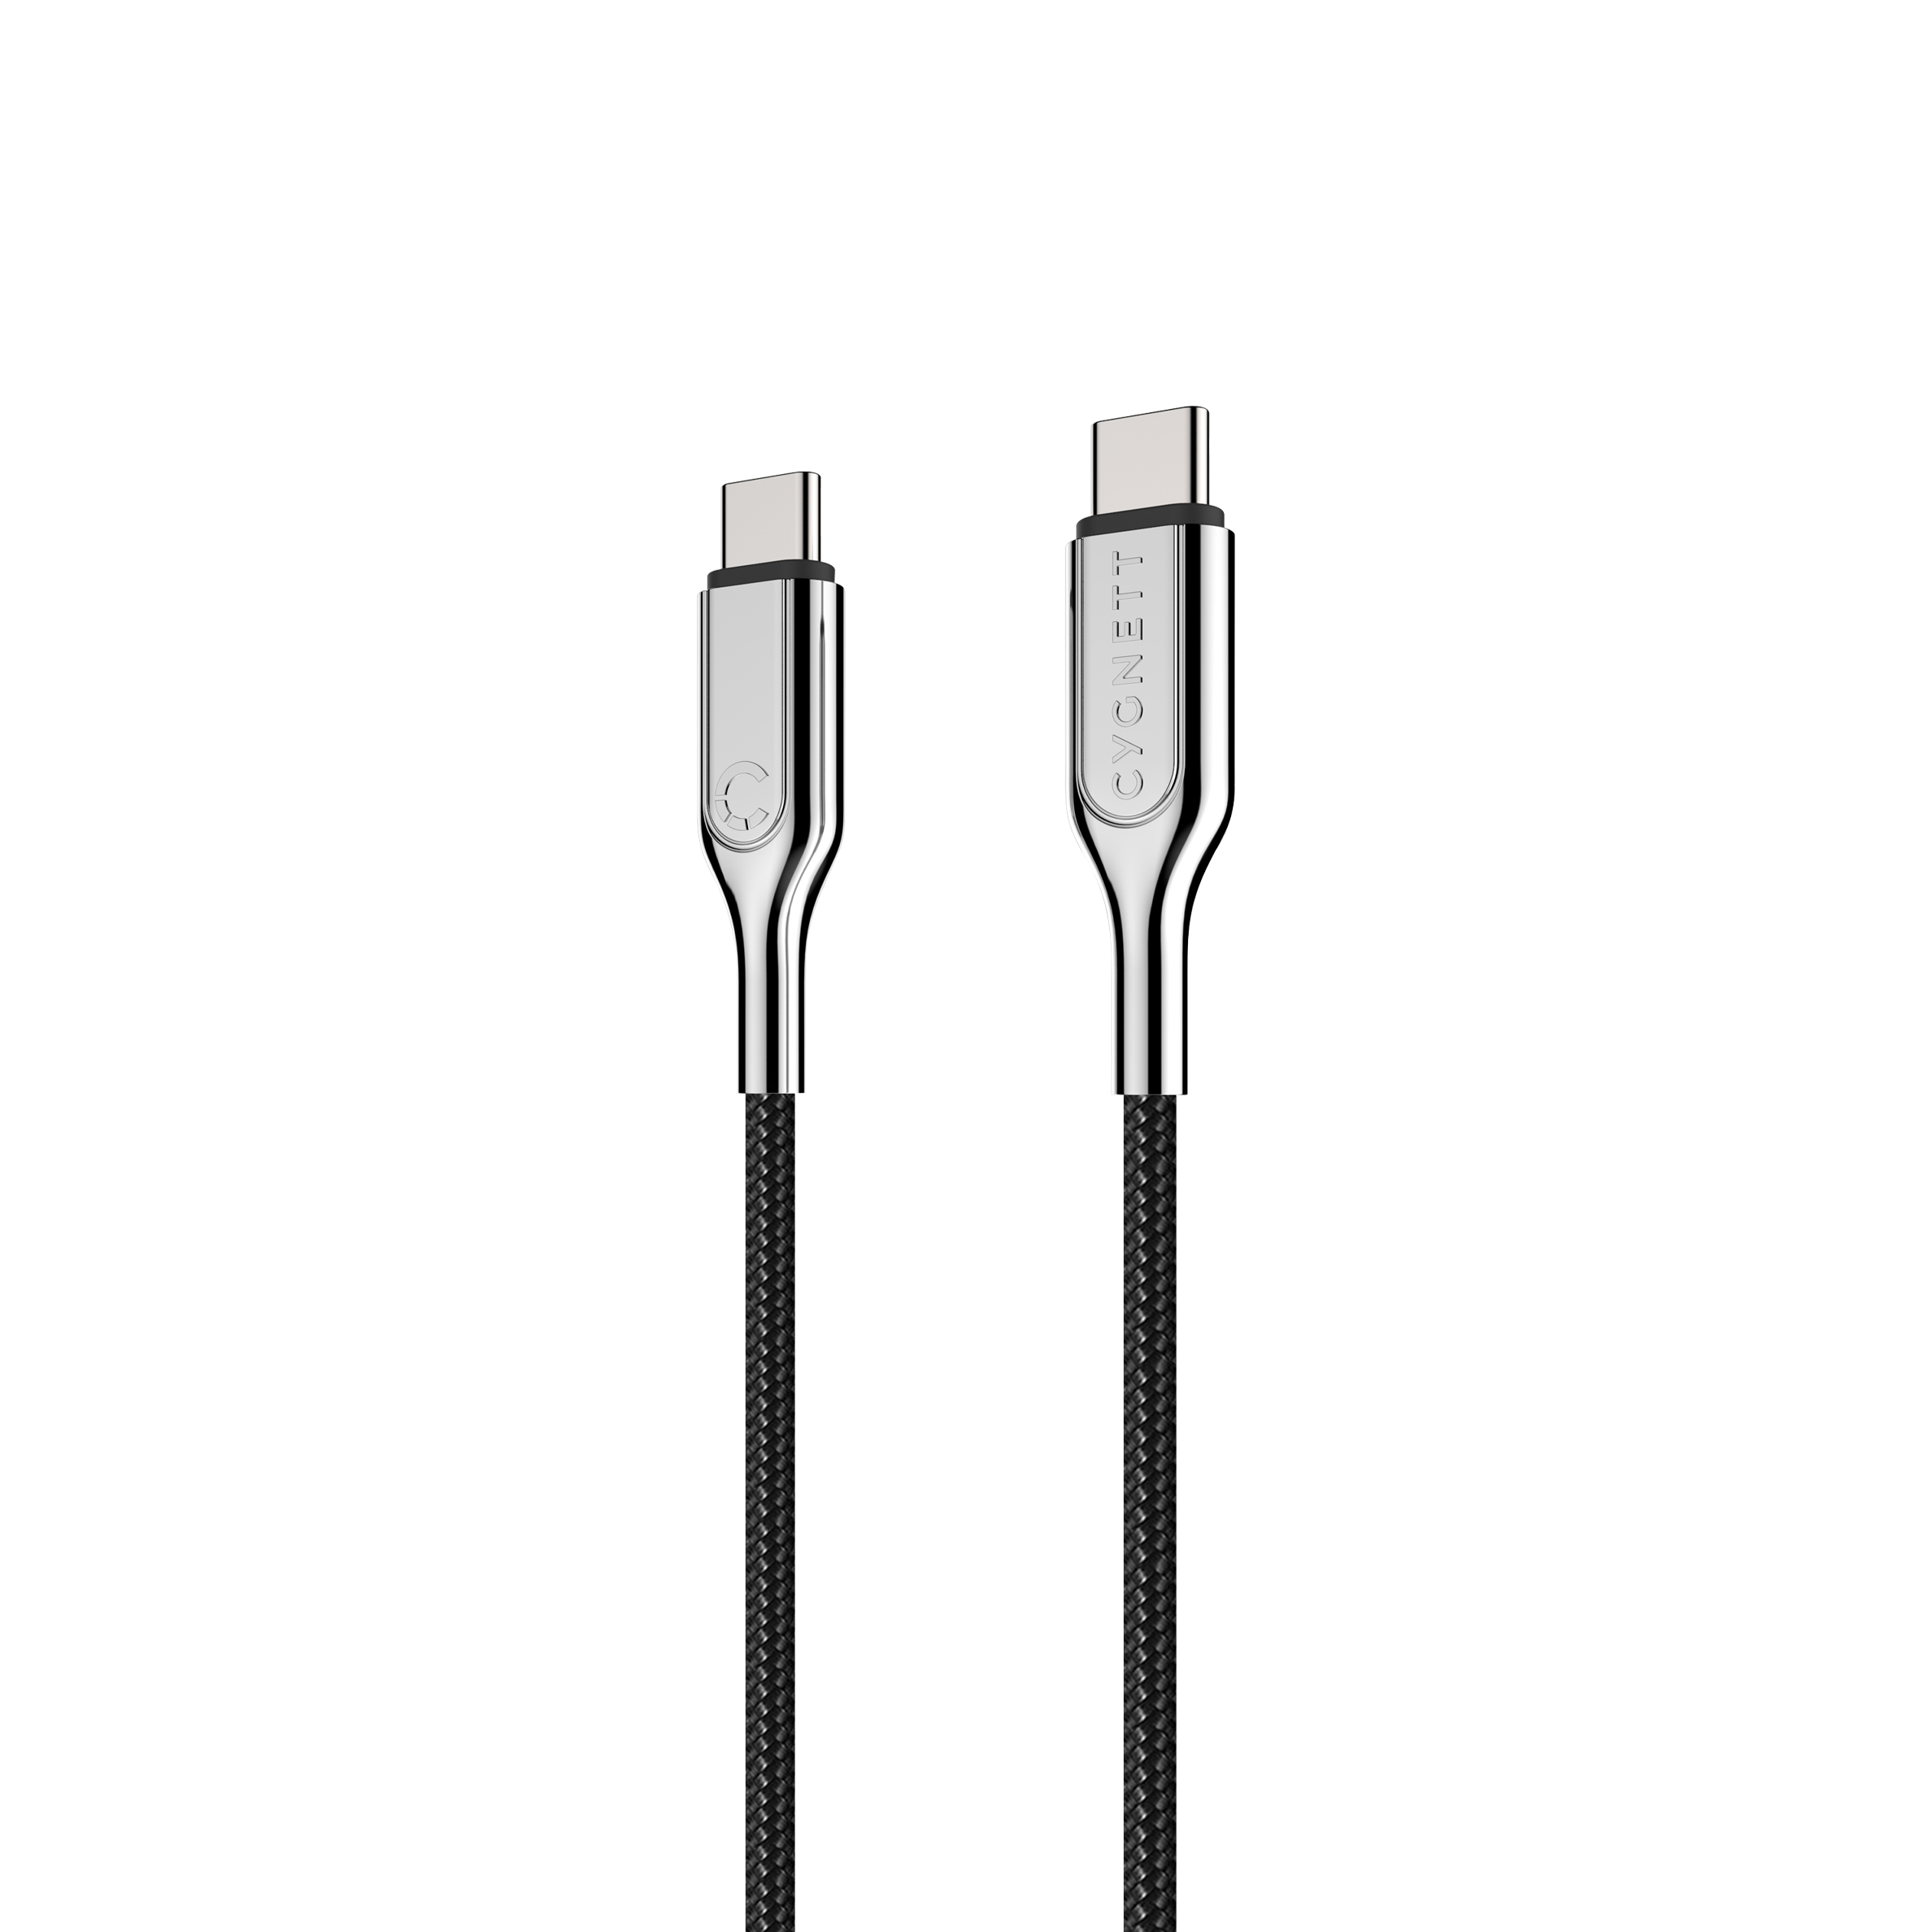 USB-C to USB-C (USB 2.0) Cable - Black 1m - Cygnett (AU)